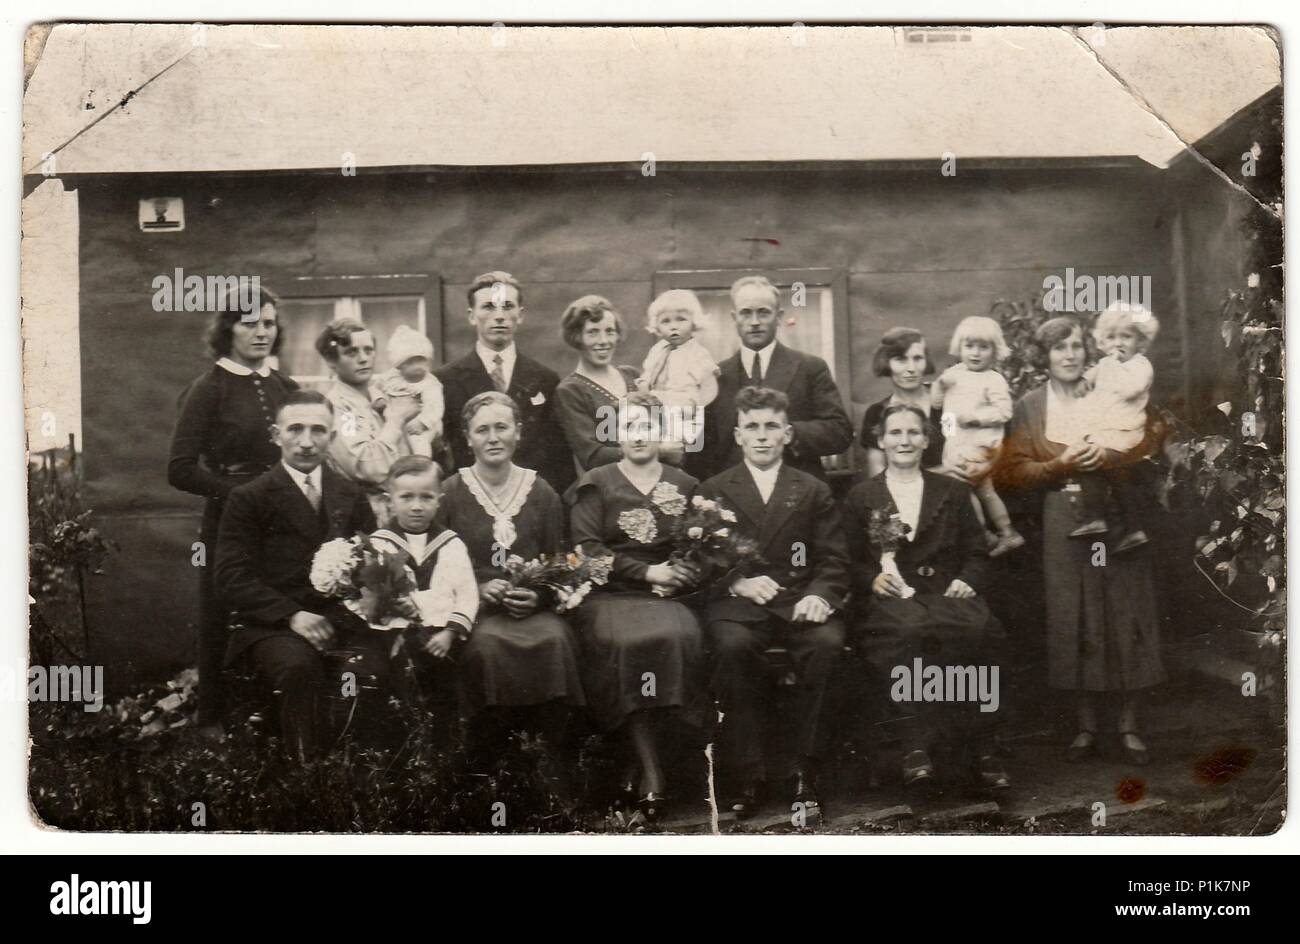 DEUTSCHLAND - UM 1940s: Vintage-Foto zeigt eine große Familie posiert hinter dem Haus. Schwarze & weiße antike Fotografie. 1940s. Stockfoto